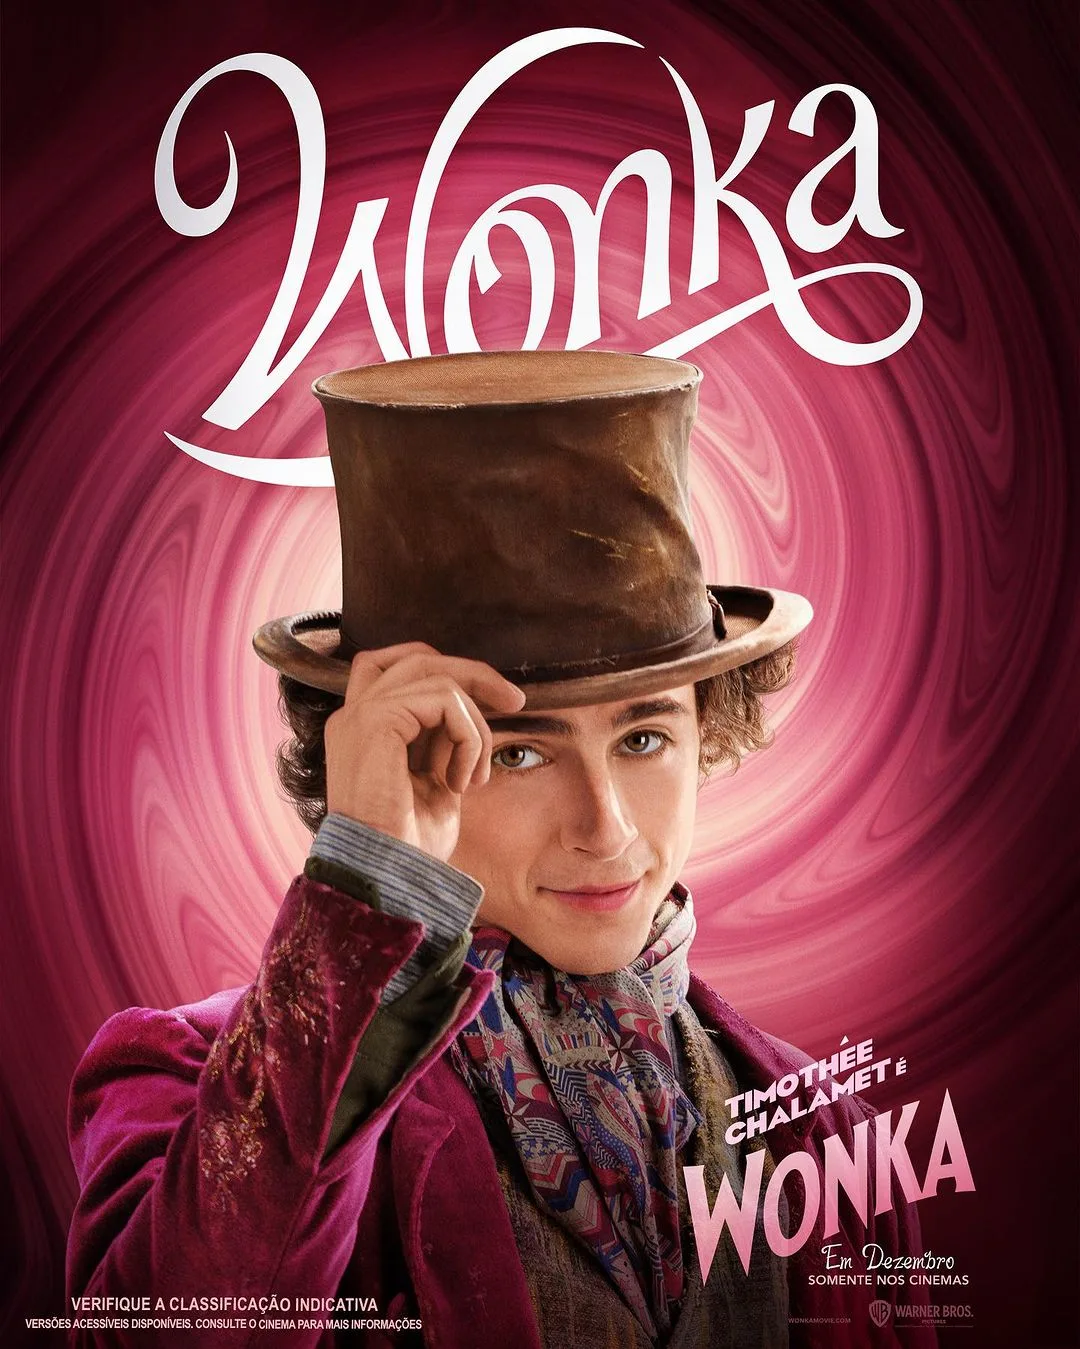 Trailer novo de "Wonka": veja Timothée Chalamet e Hugh Grant no filme